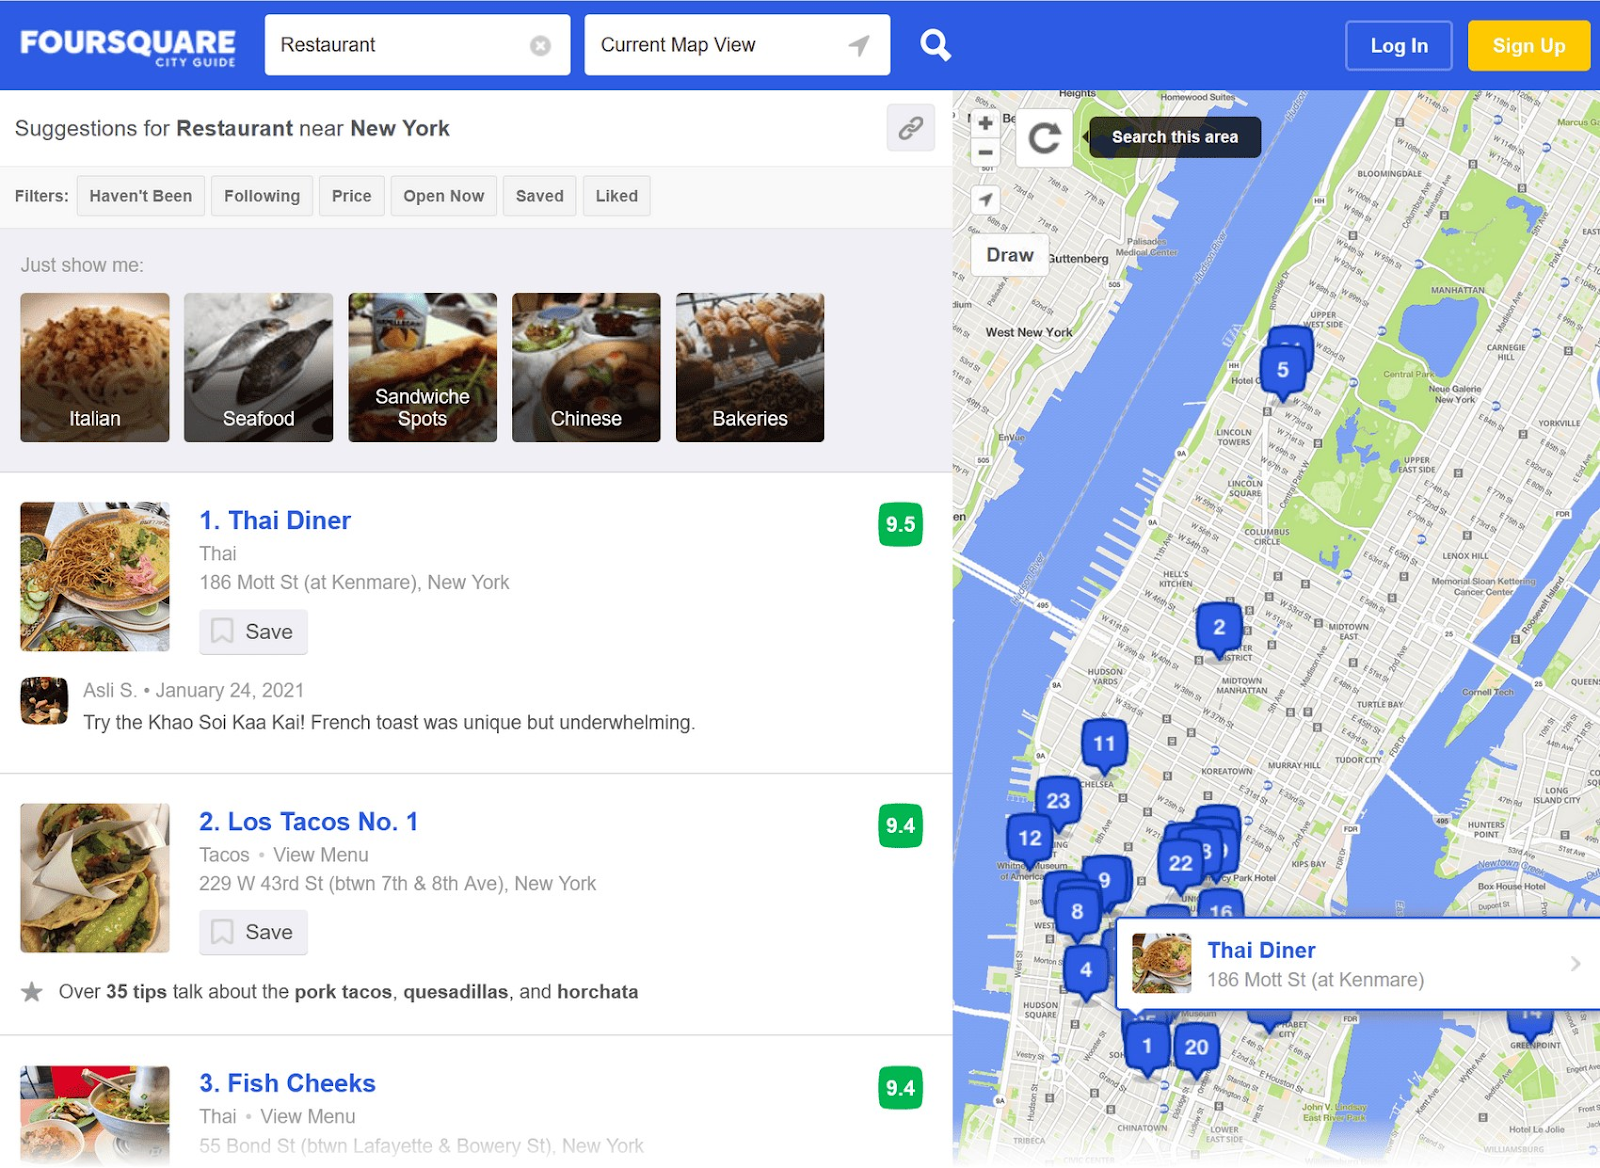 Résultats de Foursquare répertoriant les restaurants à gauche et les affichant sur la carte à droite